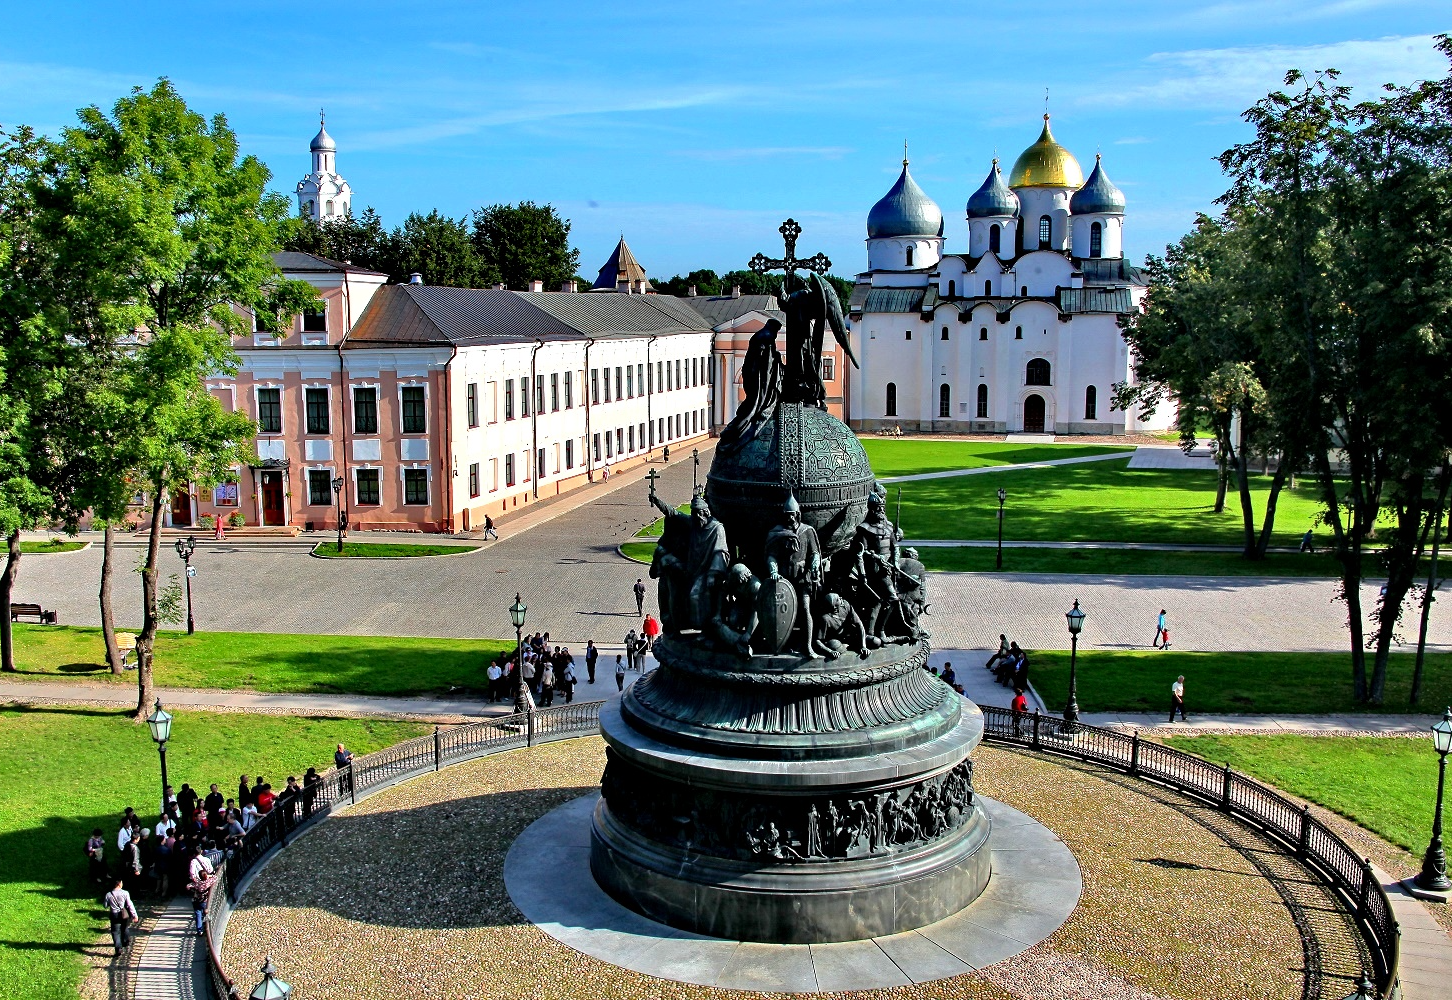 Великий Новгород – город древний, в котором чтят историю и русские традиции Сохранившиеся архитектурные объекты прошлого особенно живописно смотрятся на